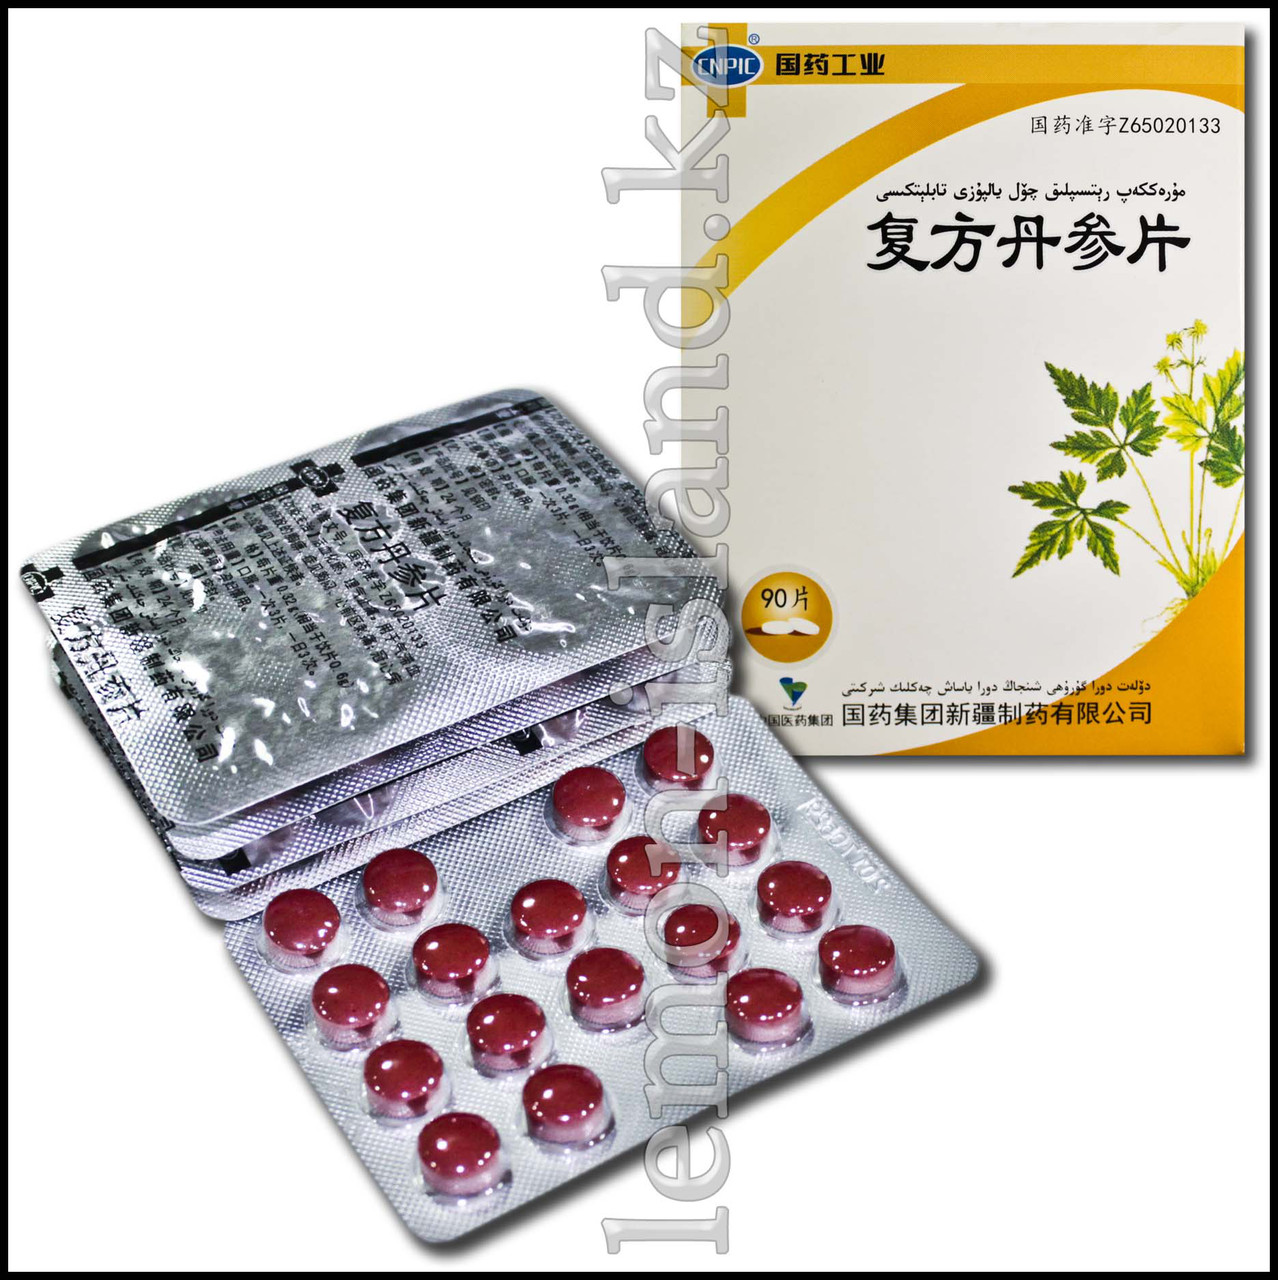 Таблетки для лечения заболеваний сердечно-сосудистой системы Fufang Danshen (Фуфан Даньшэнь).